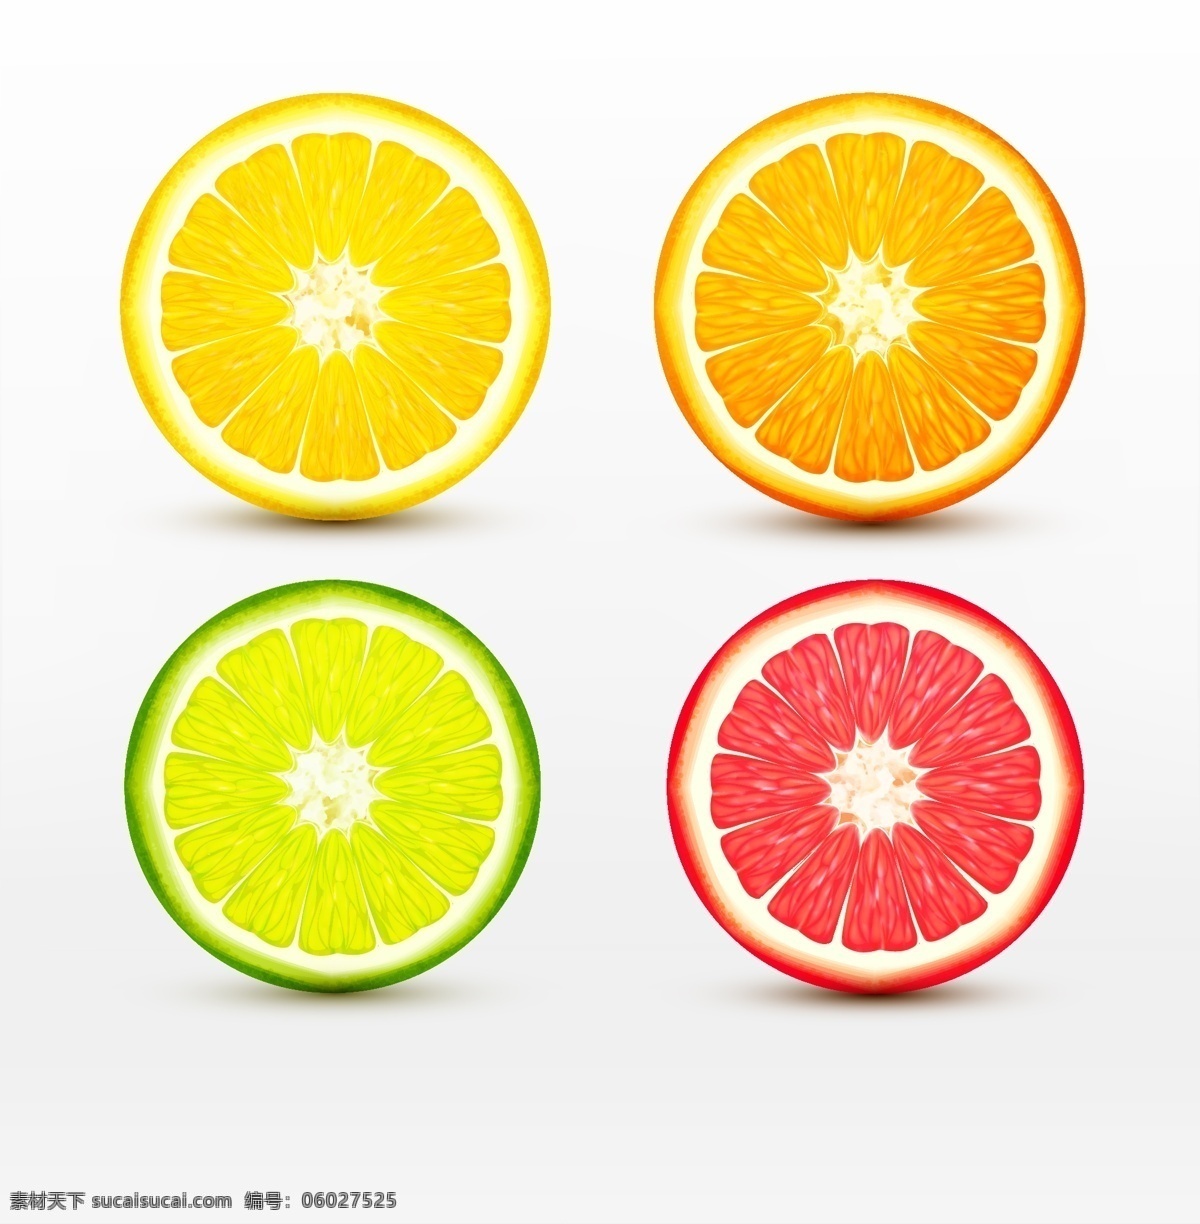 四 款 不同 颜色 柠檬 切面 矢量 水果 黄柠檬 橙色柠檬 青柠檬 红柠檬 柠檬切面 果实 漂亮的柠檬 文化艺术 绘画书法